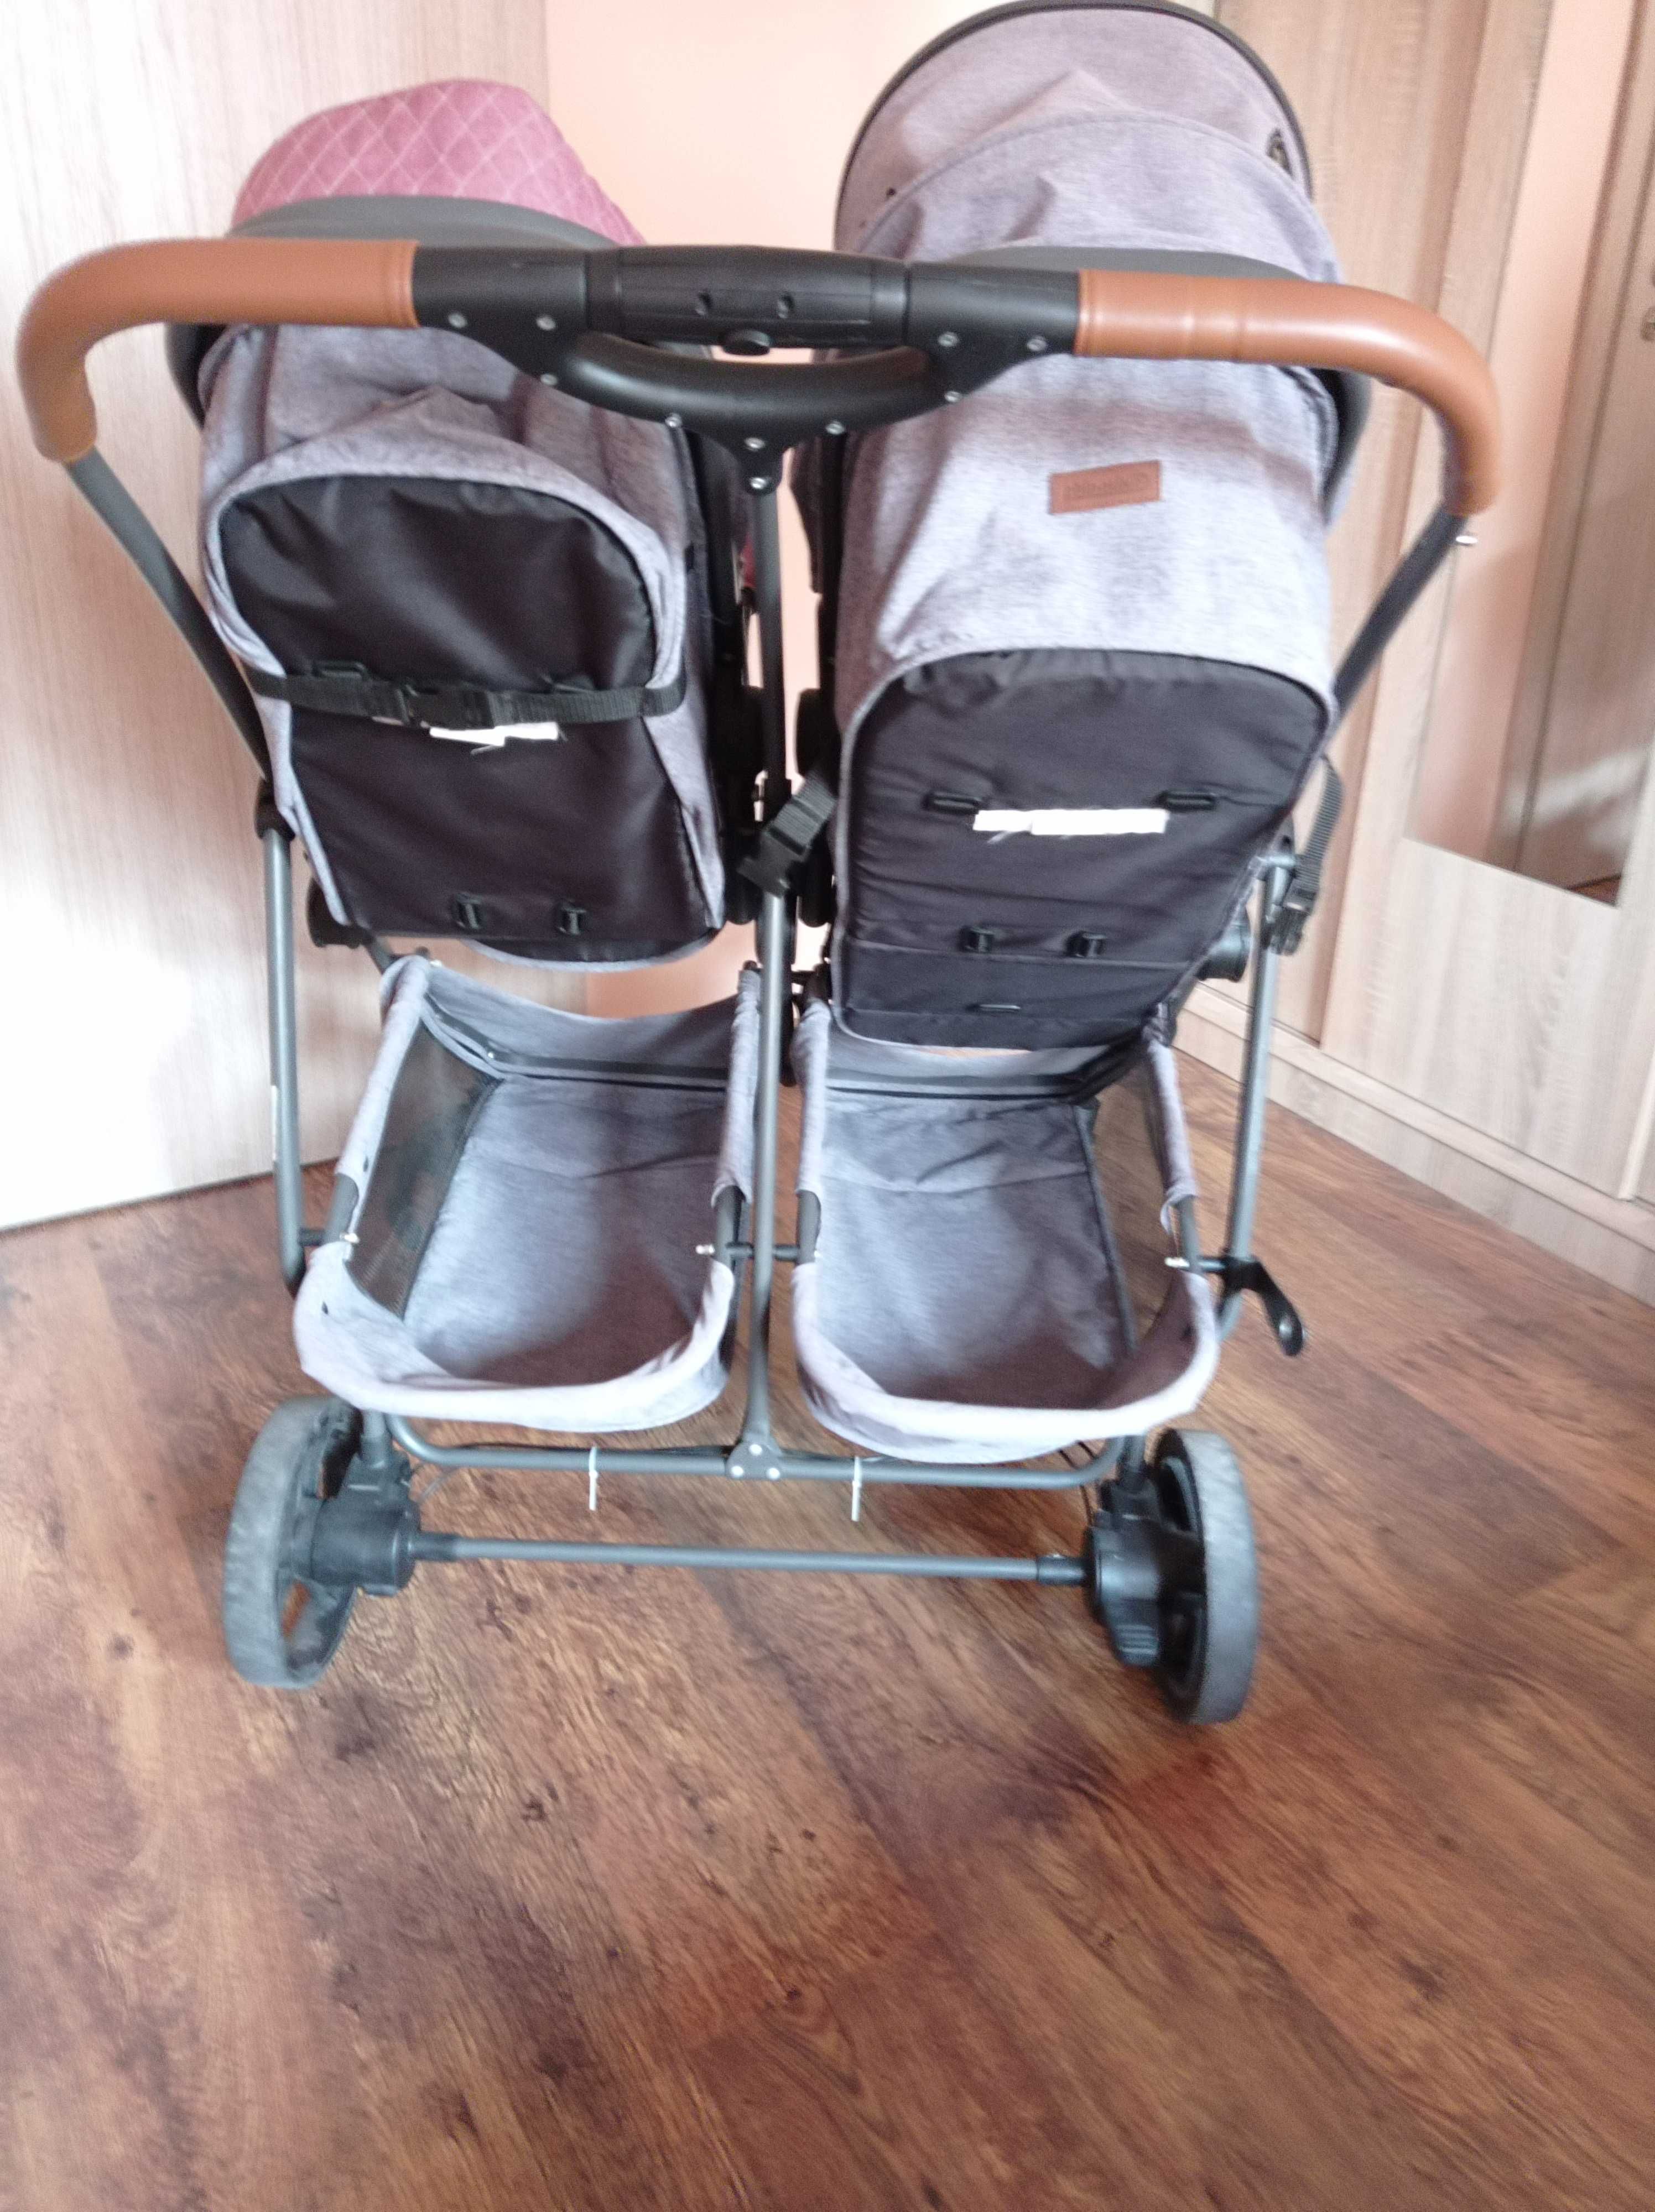 Бебешка количка Chipolino Duo Smart